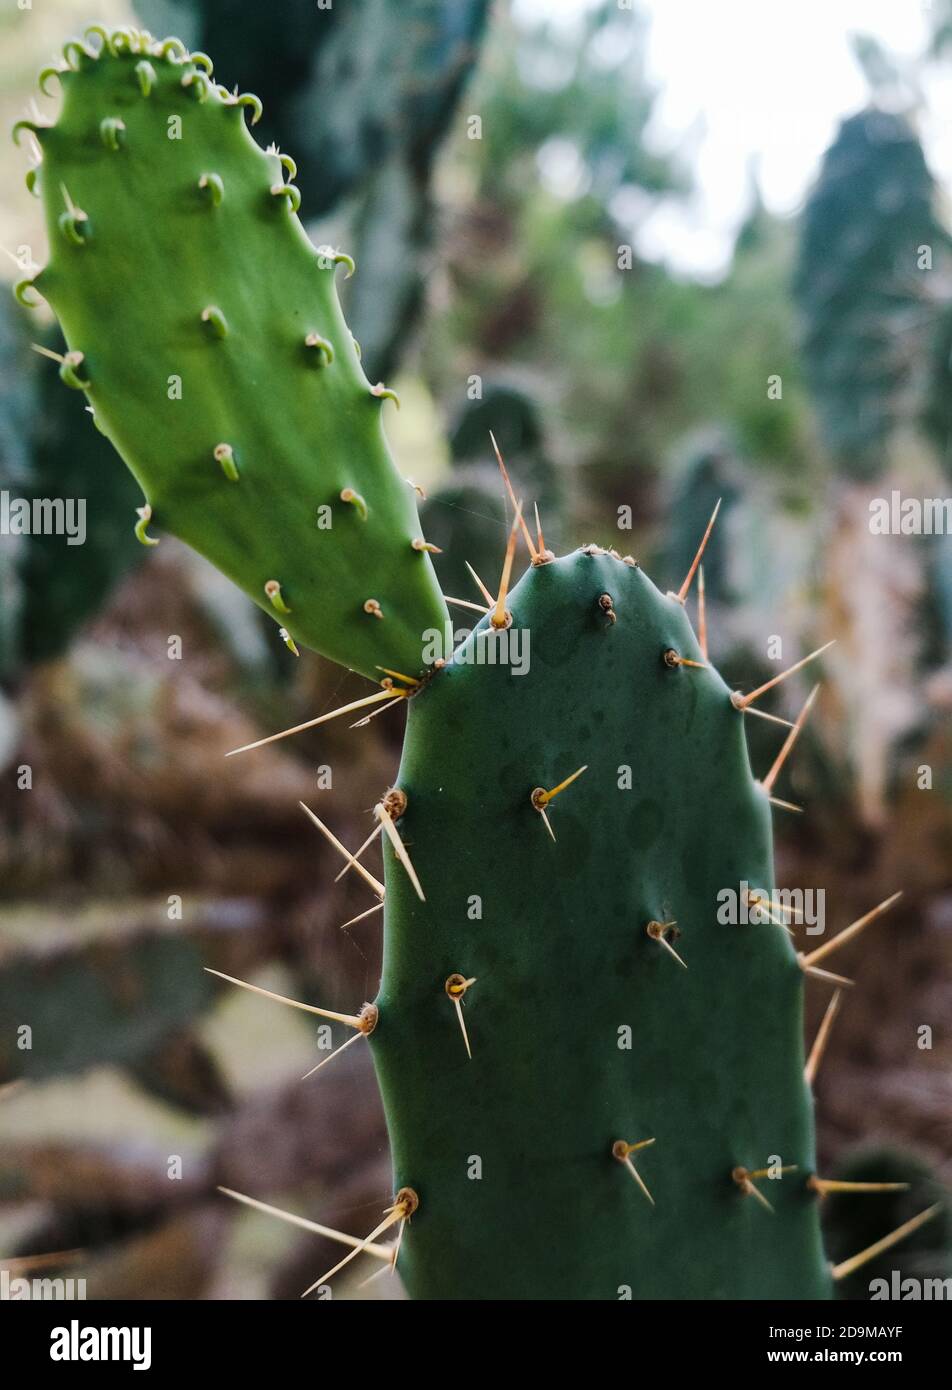 Splendidi succulenti tropicali. Campo cieca di cactus di pera di prickly. Vista closeup di foglie di cactus verdi con spine affilate. Cactus naturali in crescita all'aperto Foto Stock